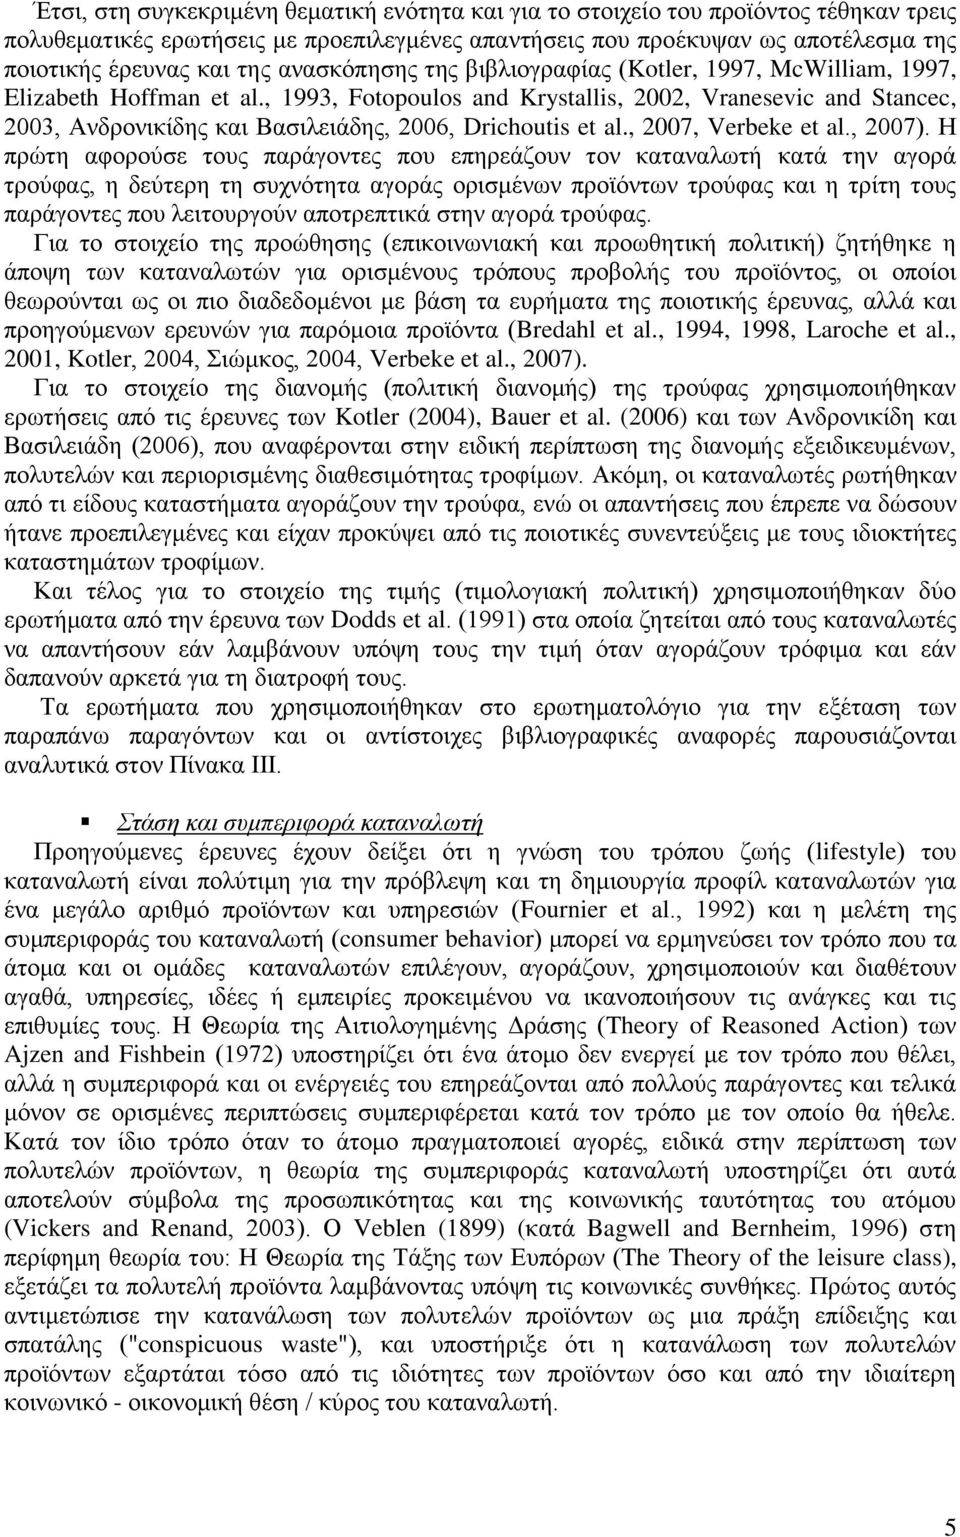 , 1993, Fotopoulos and Krystallis, 2002, Vranesevic and Stancec, 2003, Ανδρονικίδης και Βασιλειάδης, 2006, Drichoutis et al., 2007, Verbeke et al., 2007).